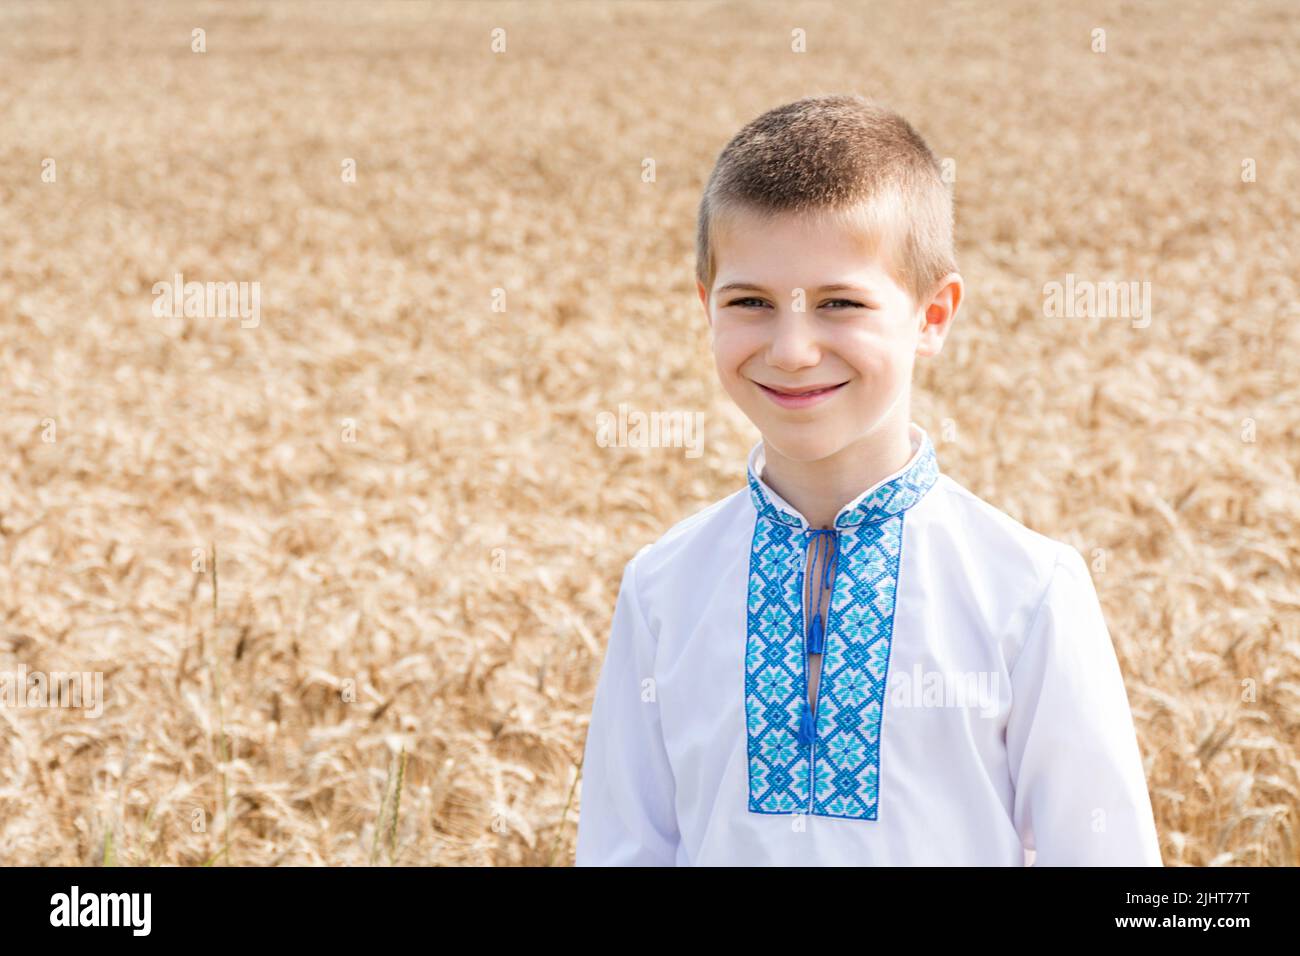 Weiche selektive Fokussierung eines Schuljungen in einer bestickten Jacke auf einem agro-industriellen Feld eines Weizenfeldes an einem sonnigen Tag. Das Kind lächelt aufrichtig. Unabhängigkeitstag, Verfassung der Ukraine. Stockfoto